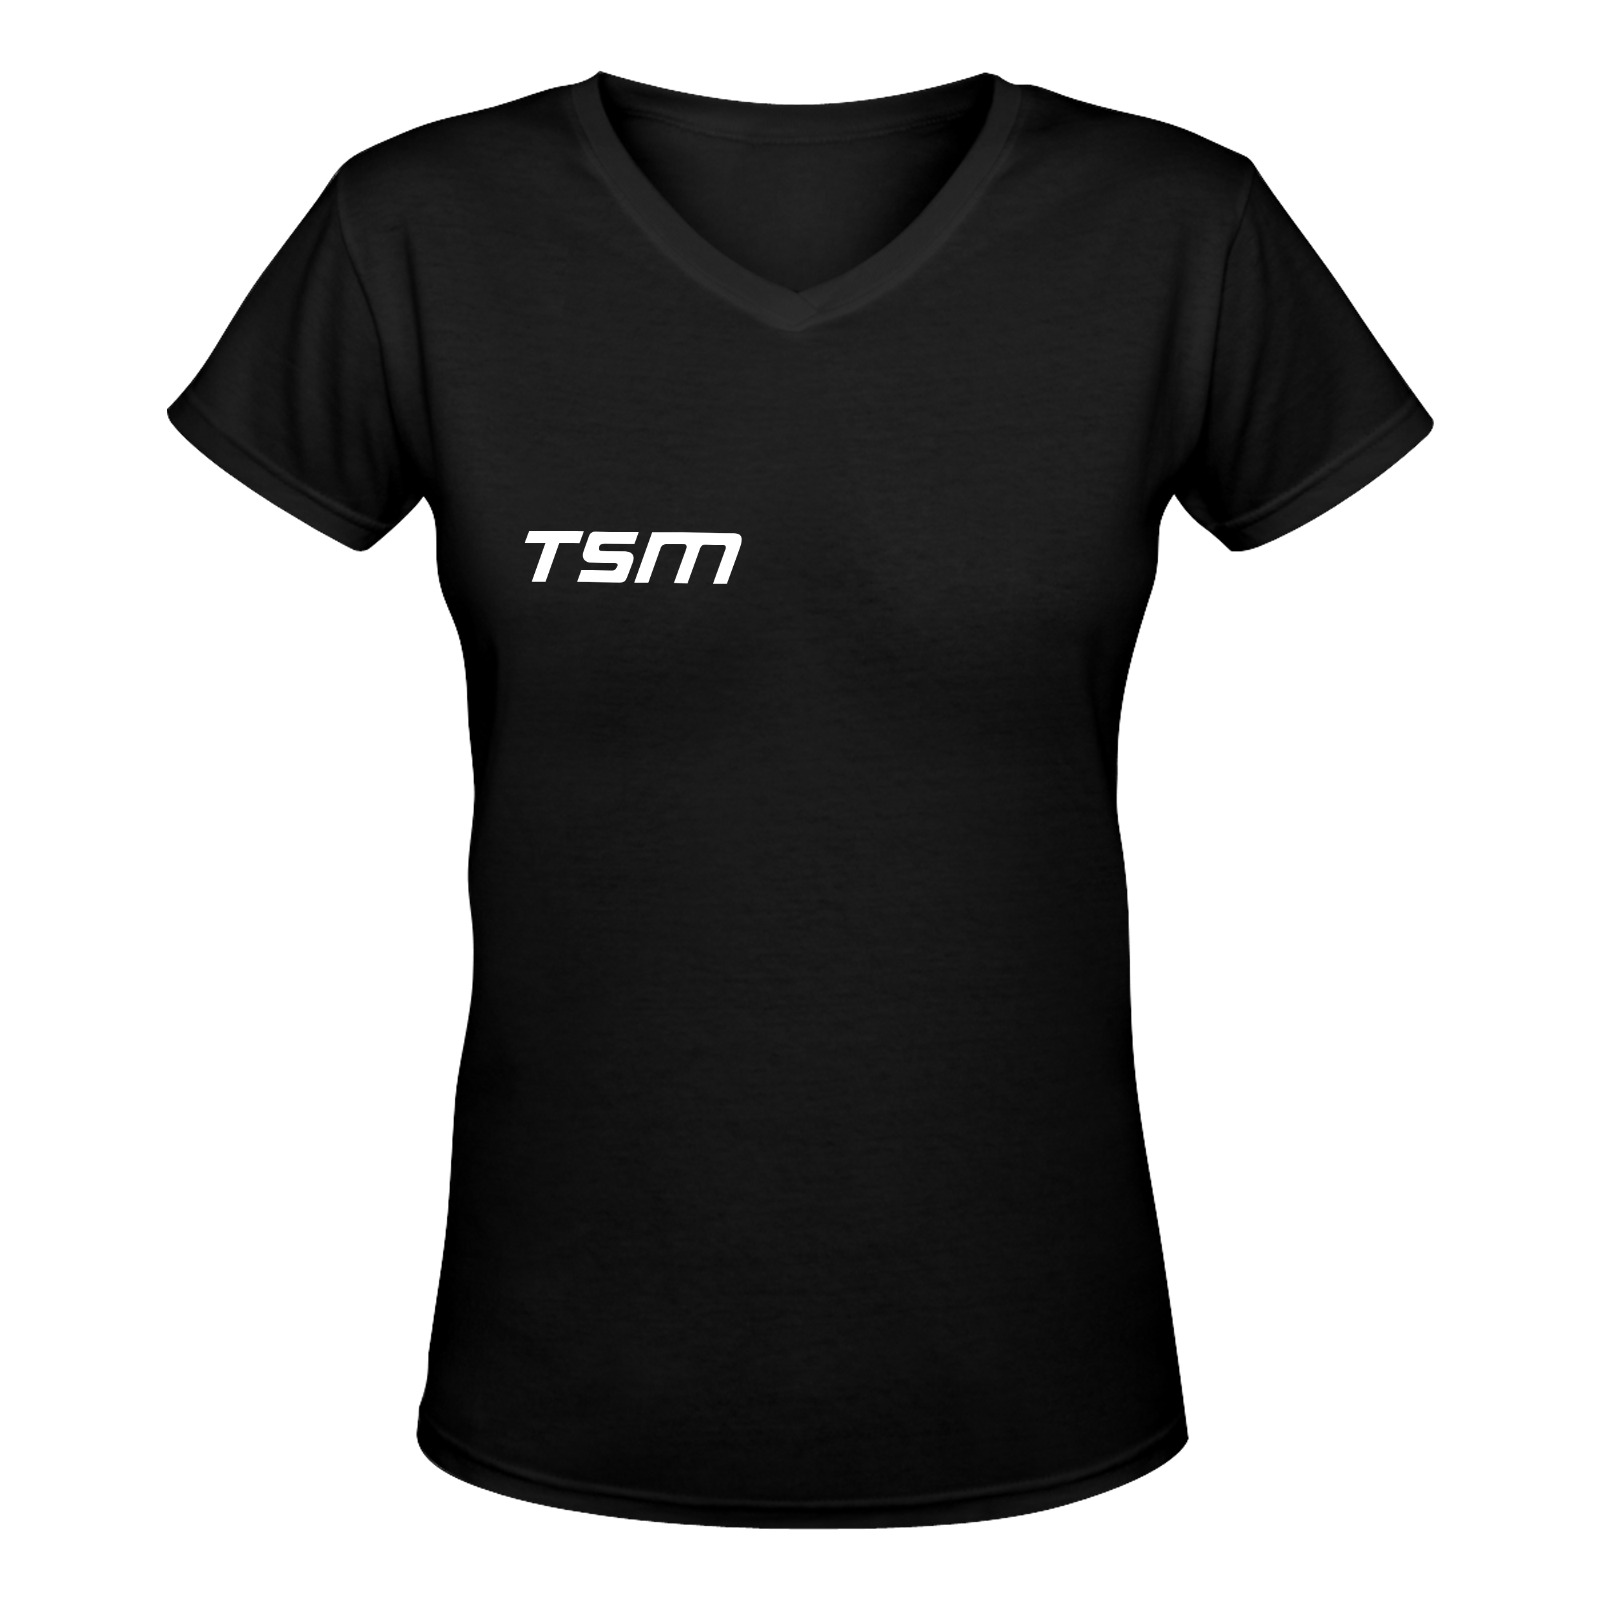 women_s_deep_v_neck_t_shirt_model_t19-147_terri-ann.shanice.morrison_tsm Women's Deep V-neck T-shirt (Model T19)